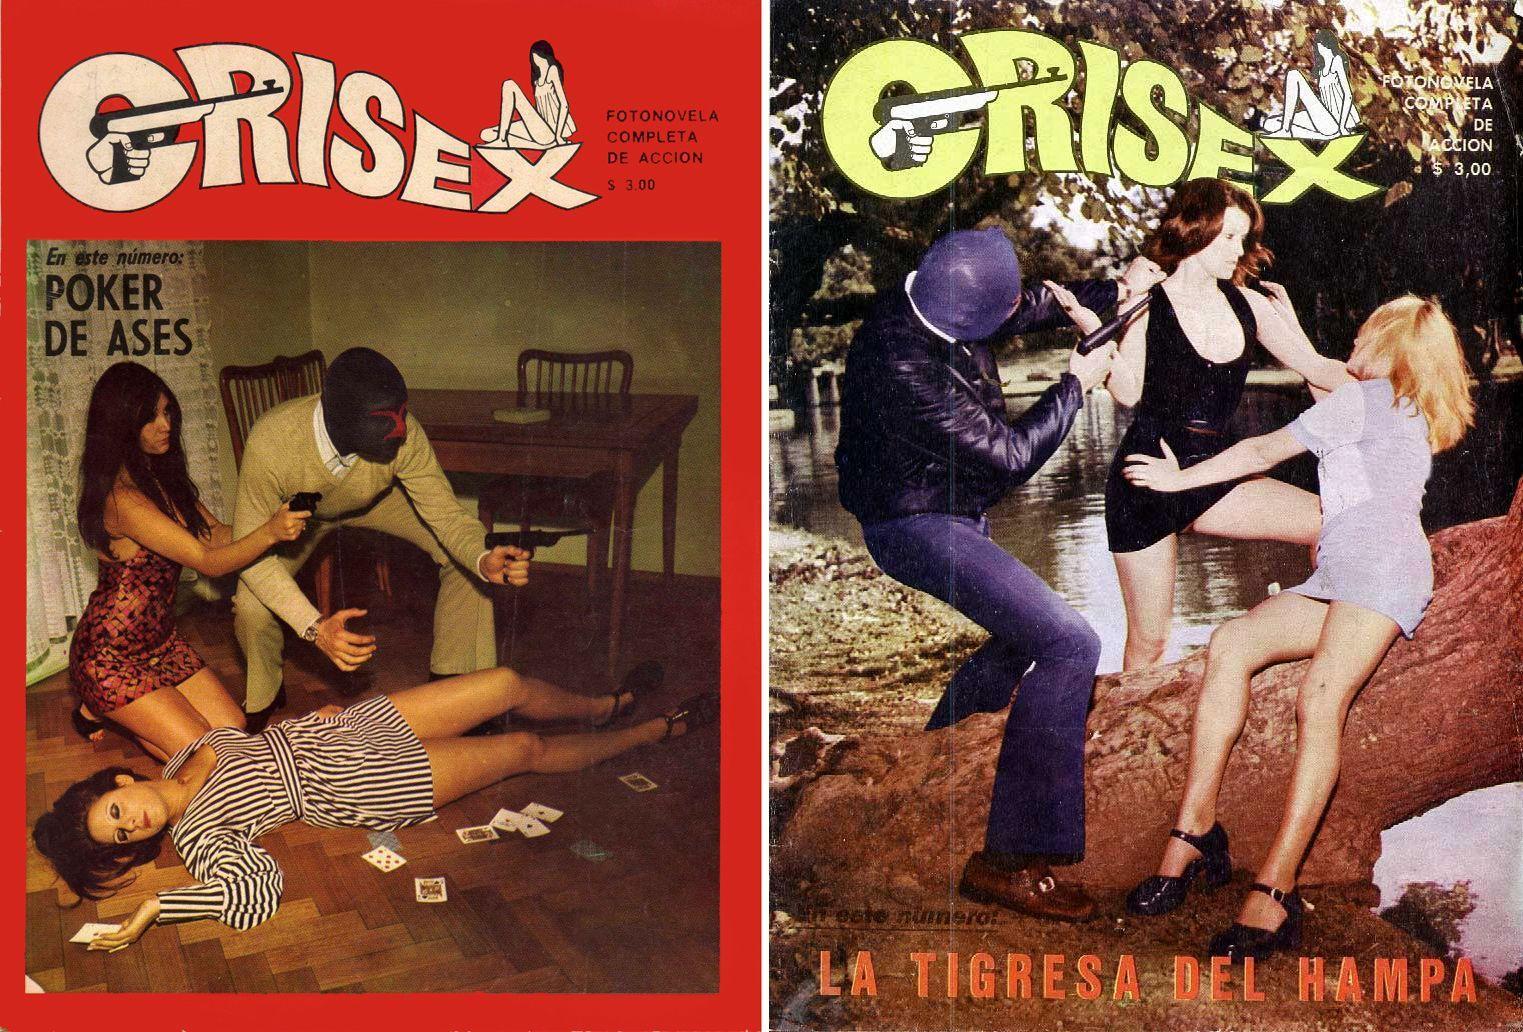 Le Fou du Monde de l'espagnol et de l'italien Crime Comics des années 1960-années 70